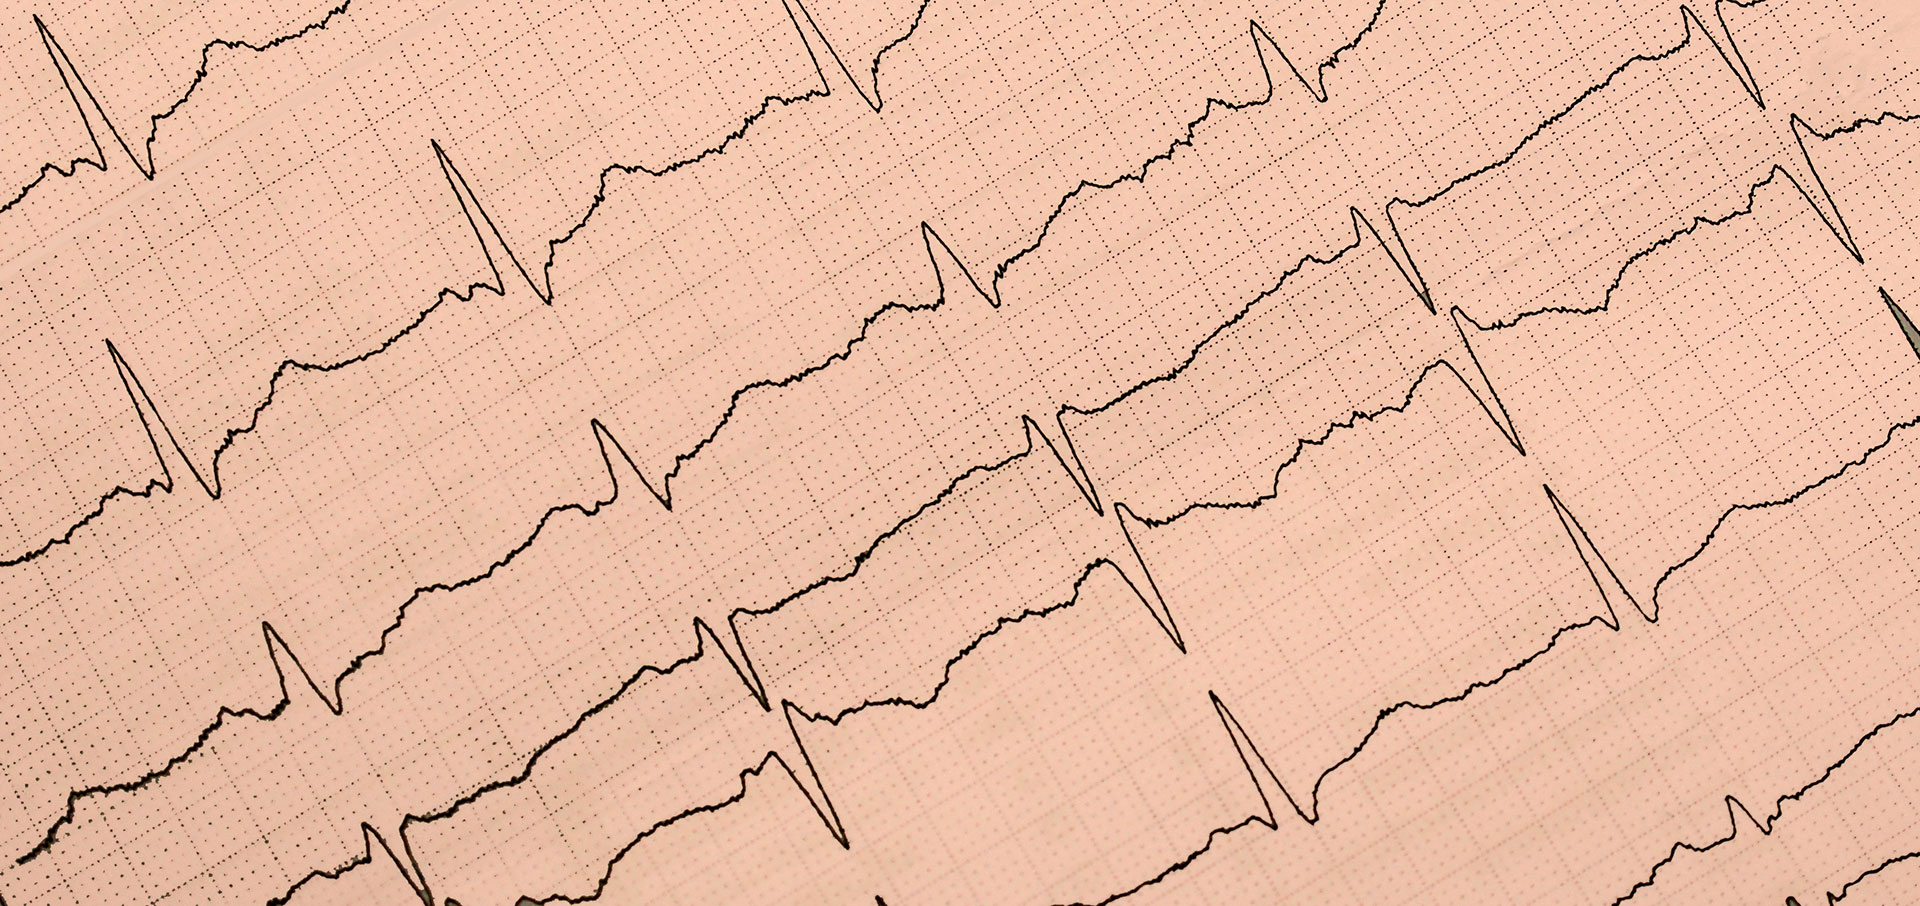 Darstellung eines Elektrokardiogramm (EKG)